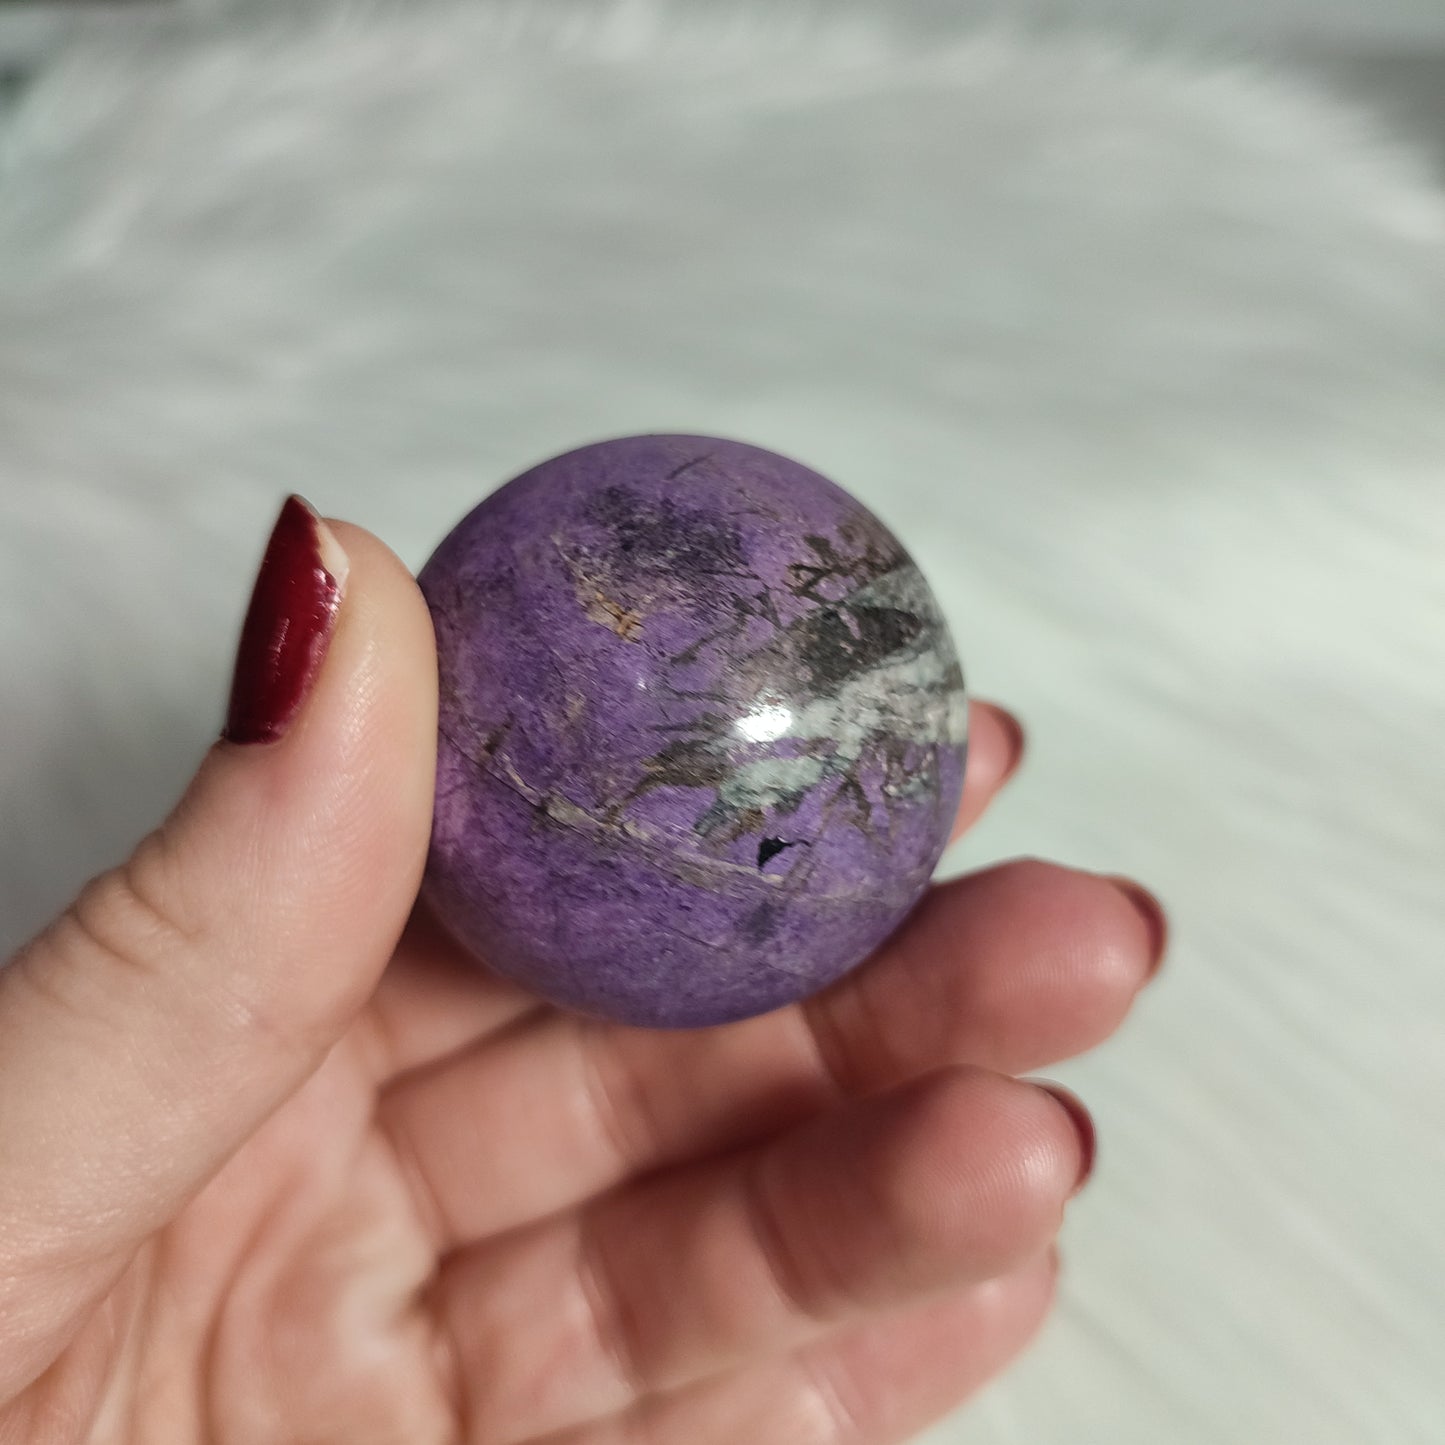 Esfera purpurita terciopelo 153 gramos